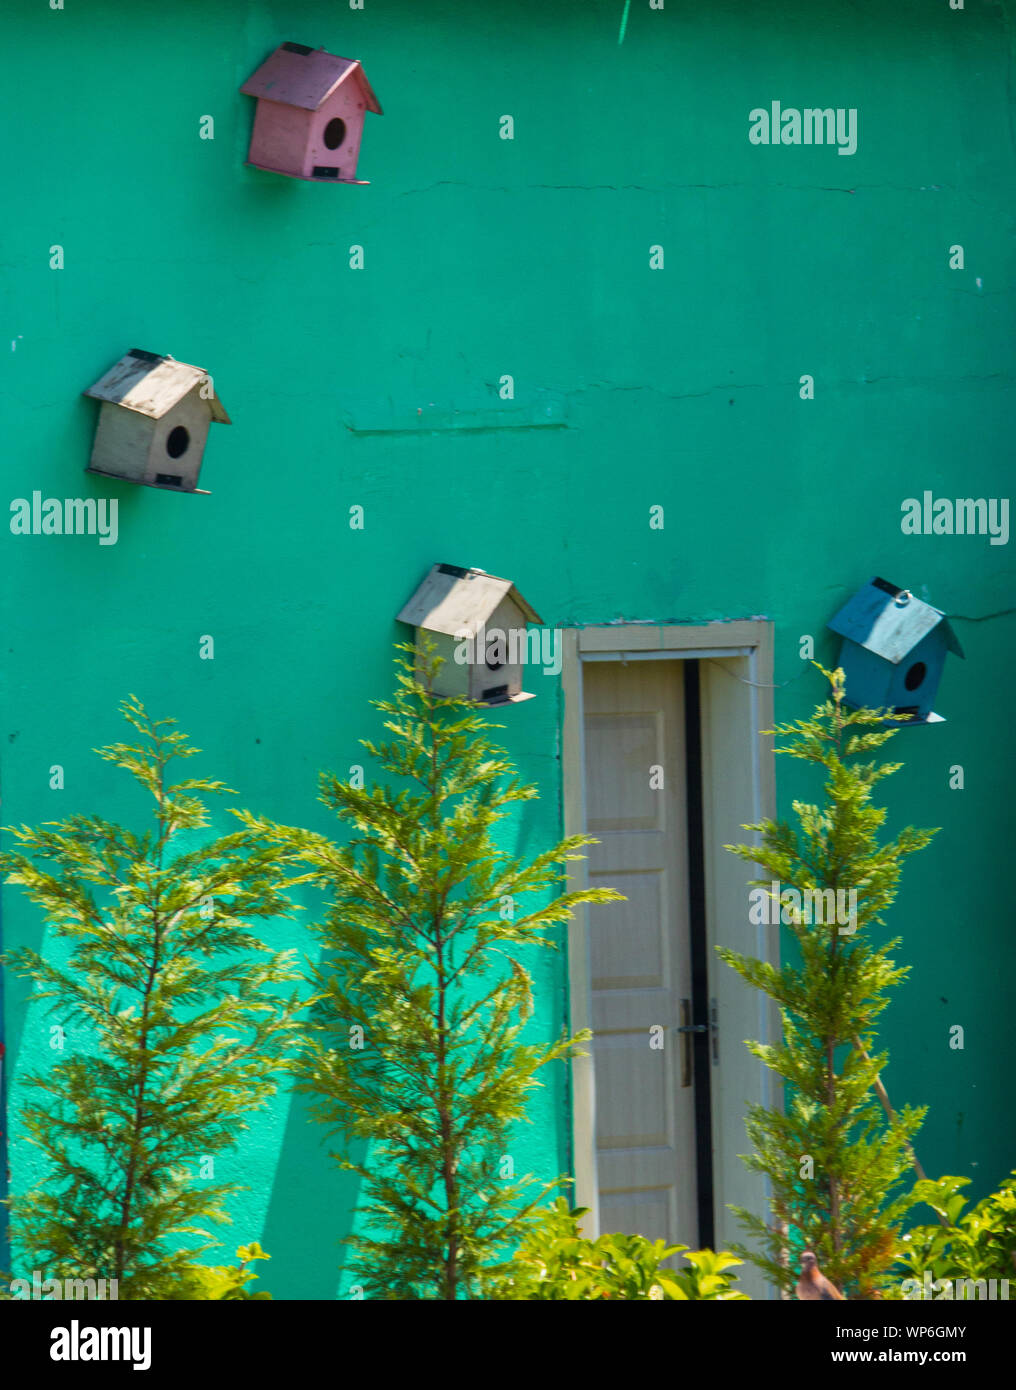 Vier Vogelnester in wechselnden Farben an einer grünen Wand mit einer Tür, die offen gelassen wurde und einige neu gepflanzte Bäume. Konzept der Wohnungsprobleme. Stockfoto